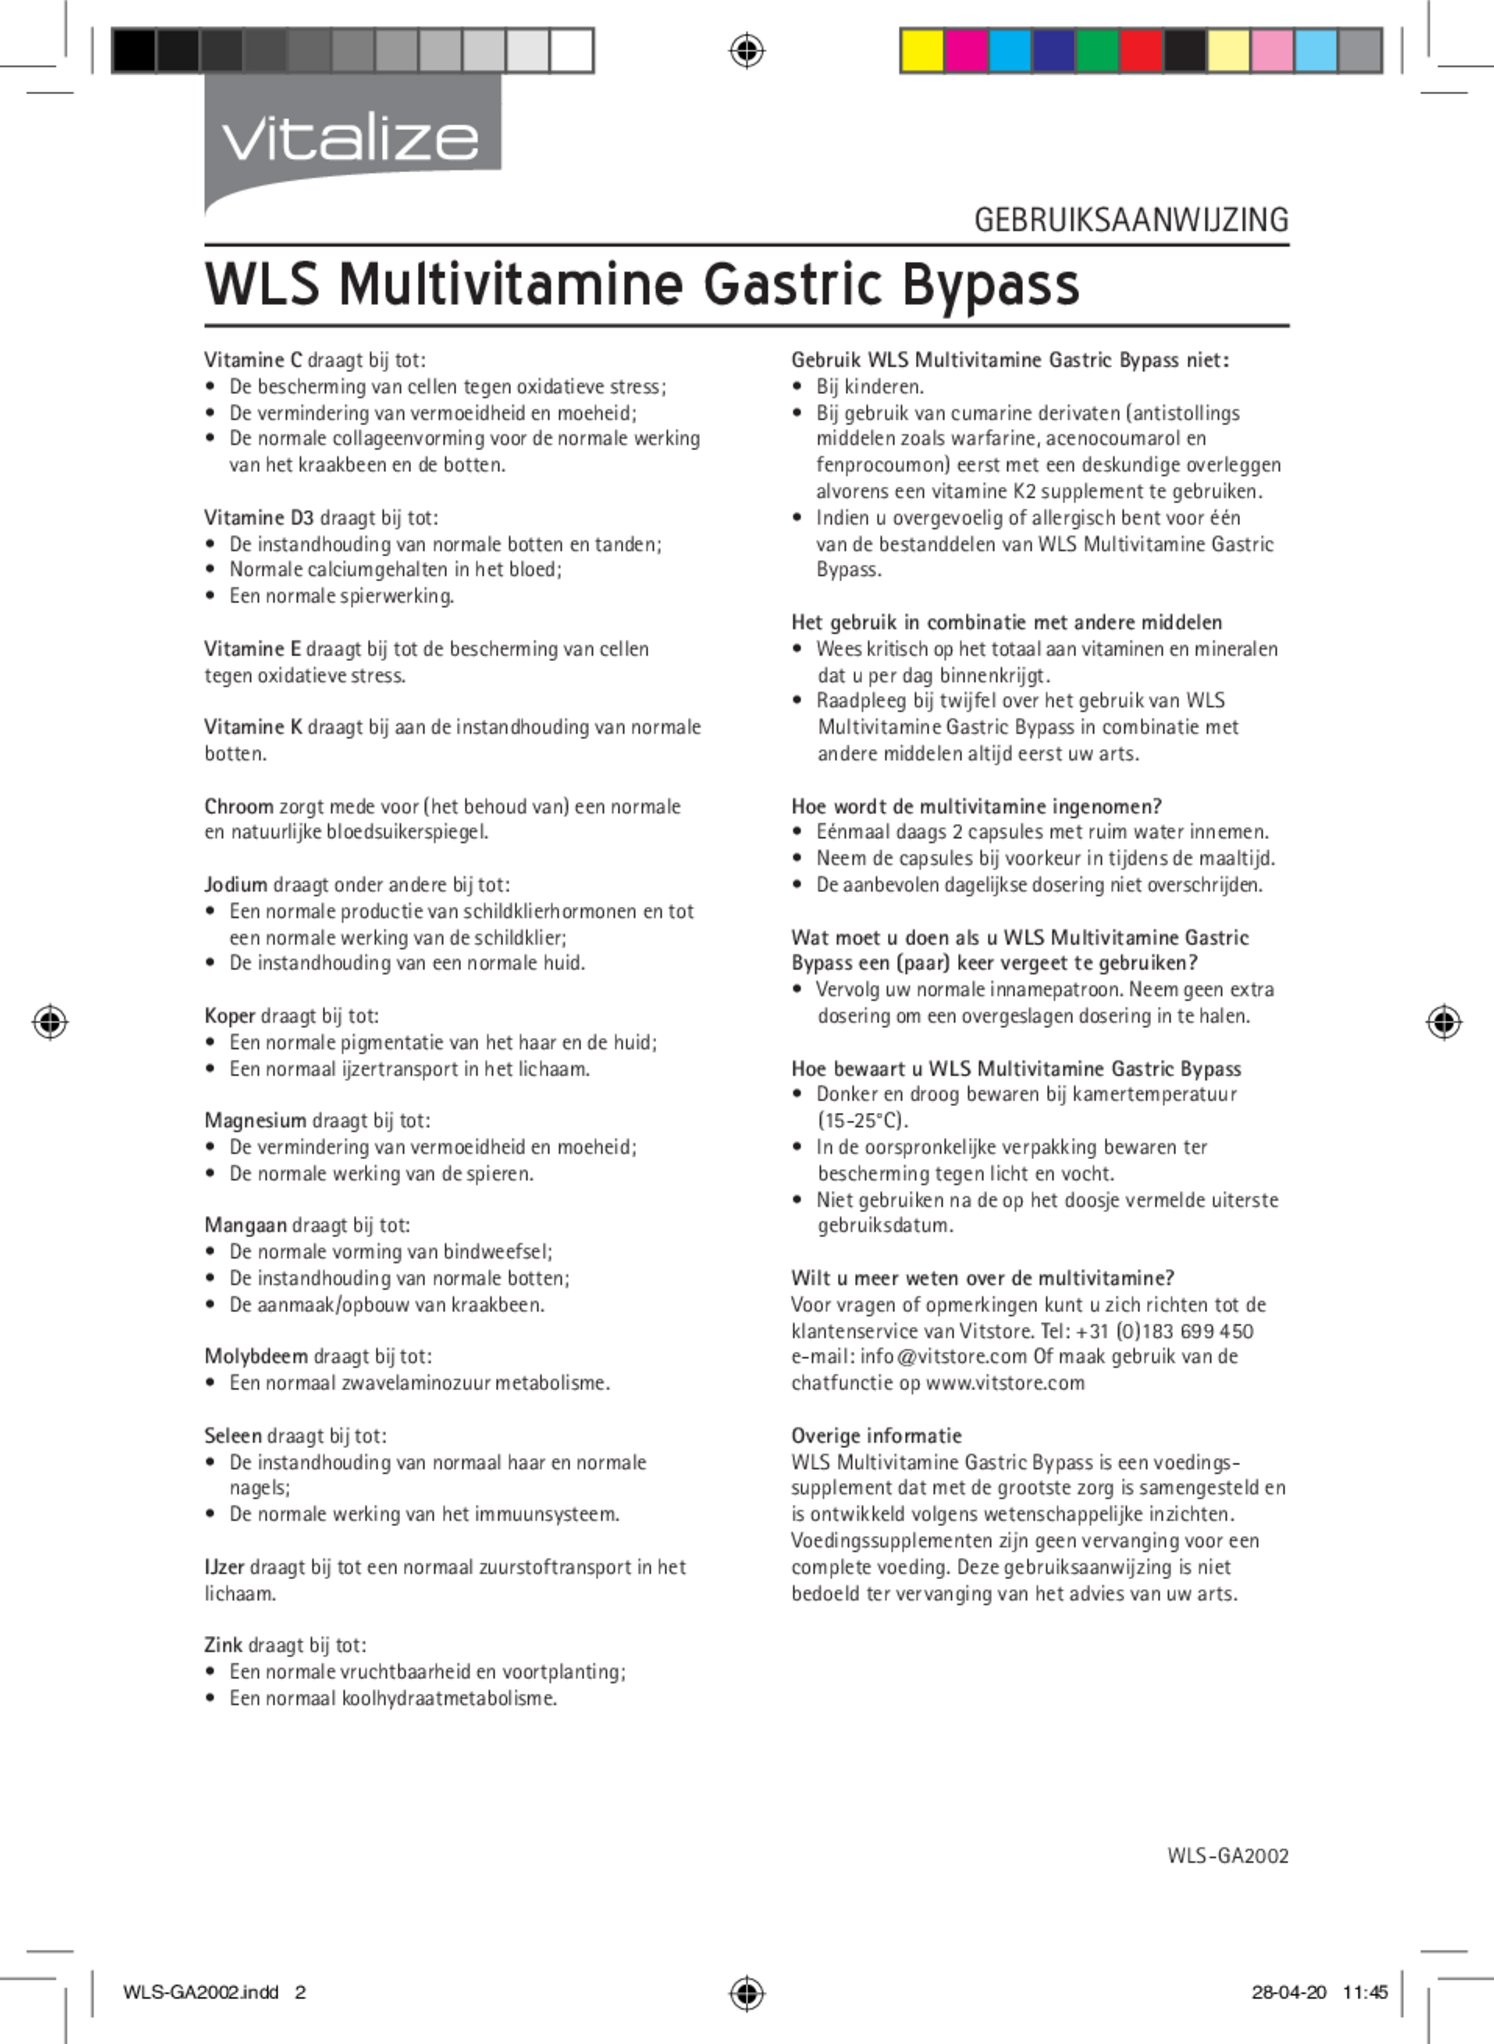 WLS Multivitamine Gastric Bypass afbeelding van document #2, bijsluiter